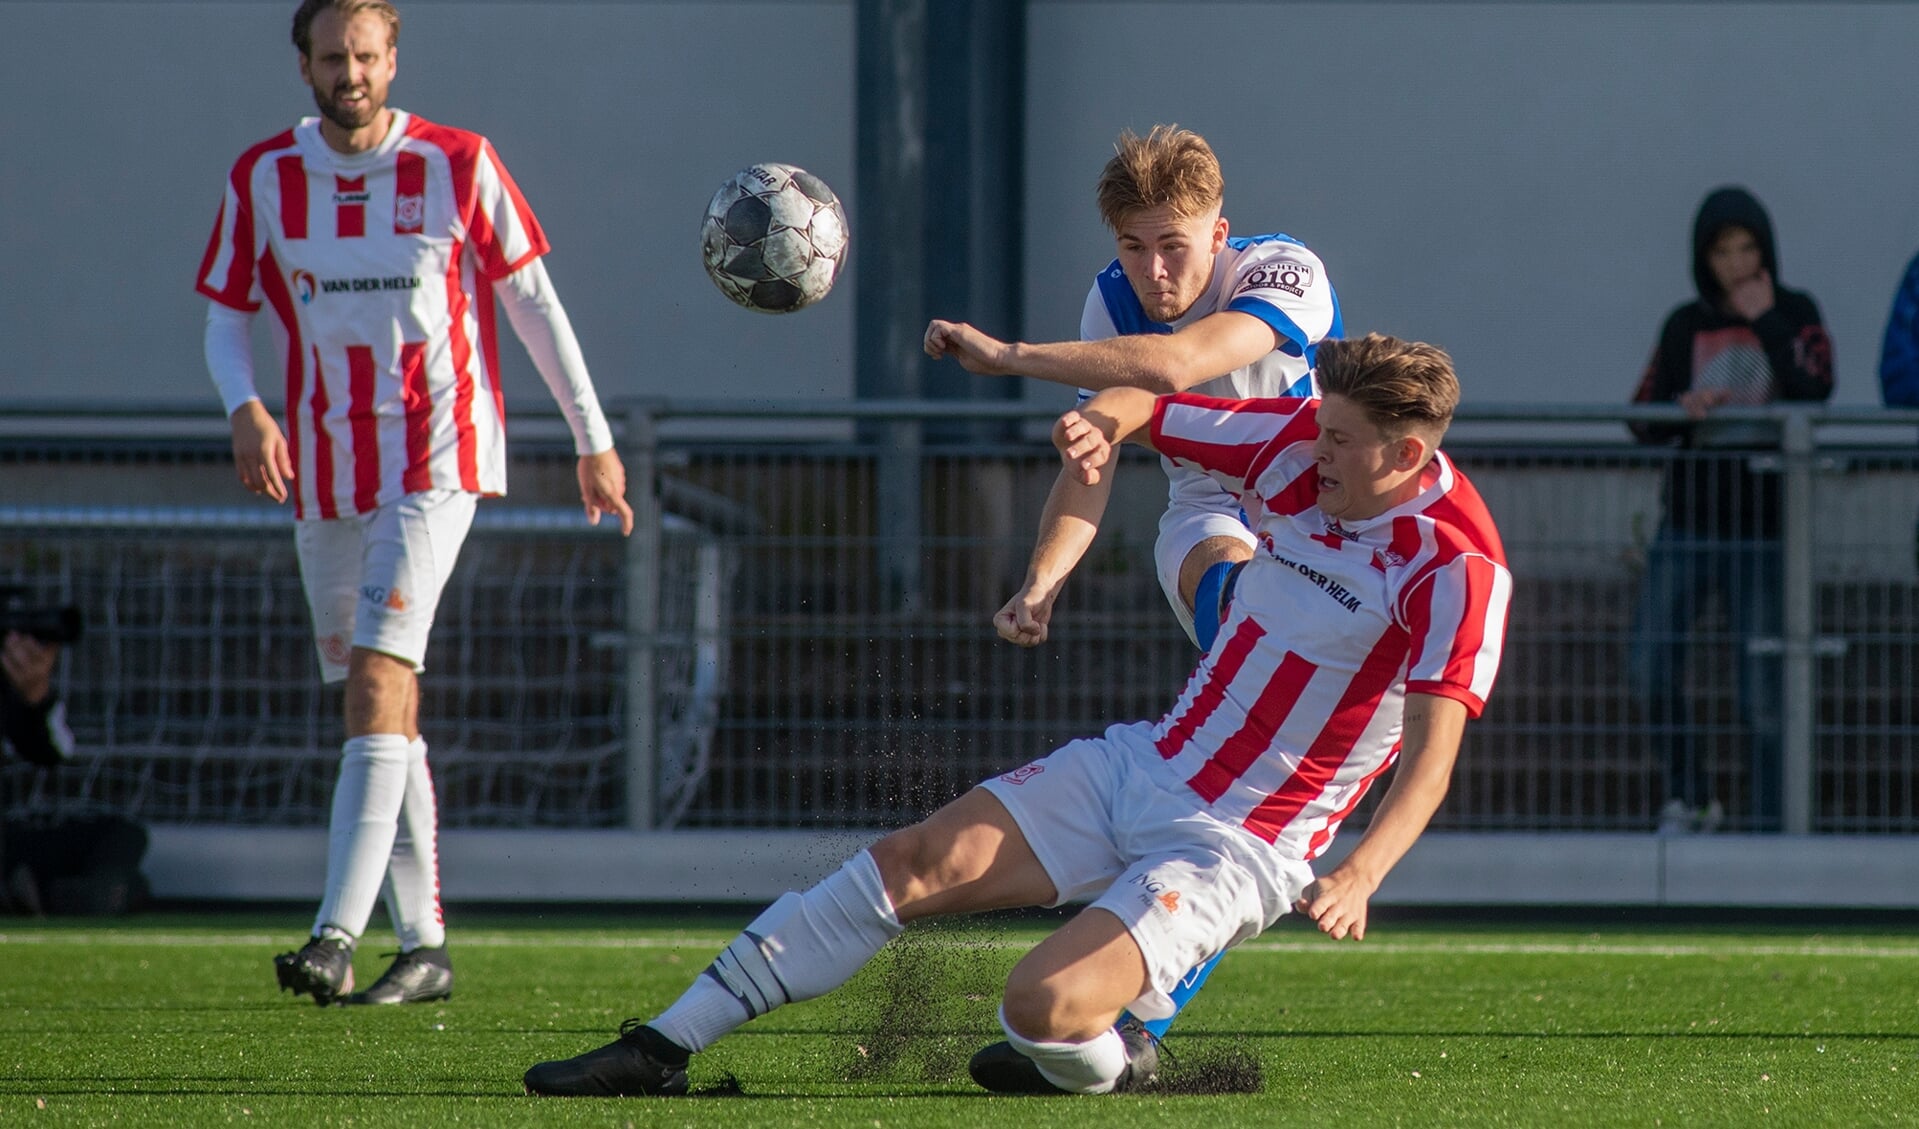 Jari Seffelaar verloor met zijn Wippolder afgelopen weekend met 1-2 tegen Den Hoorn. "Ondanks dat overheerst de trots over de reeks van vijfentwintig wedstrijden op rij die we ongeslagen zijn gebleven." (foto: Roel van Dorsten)  